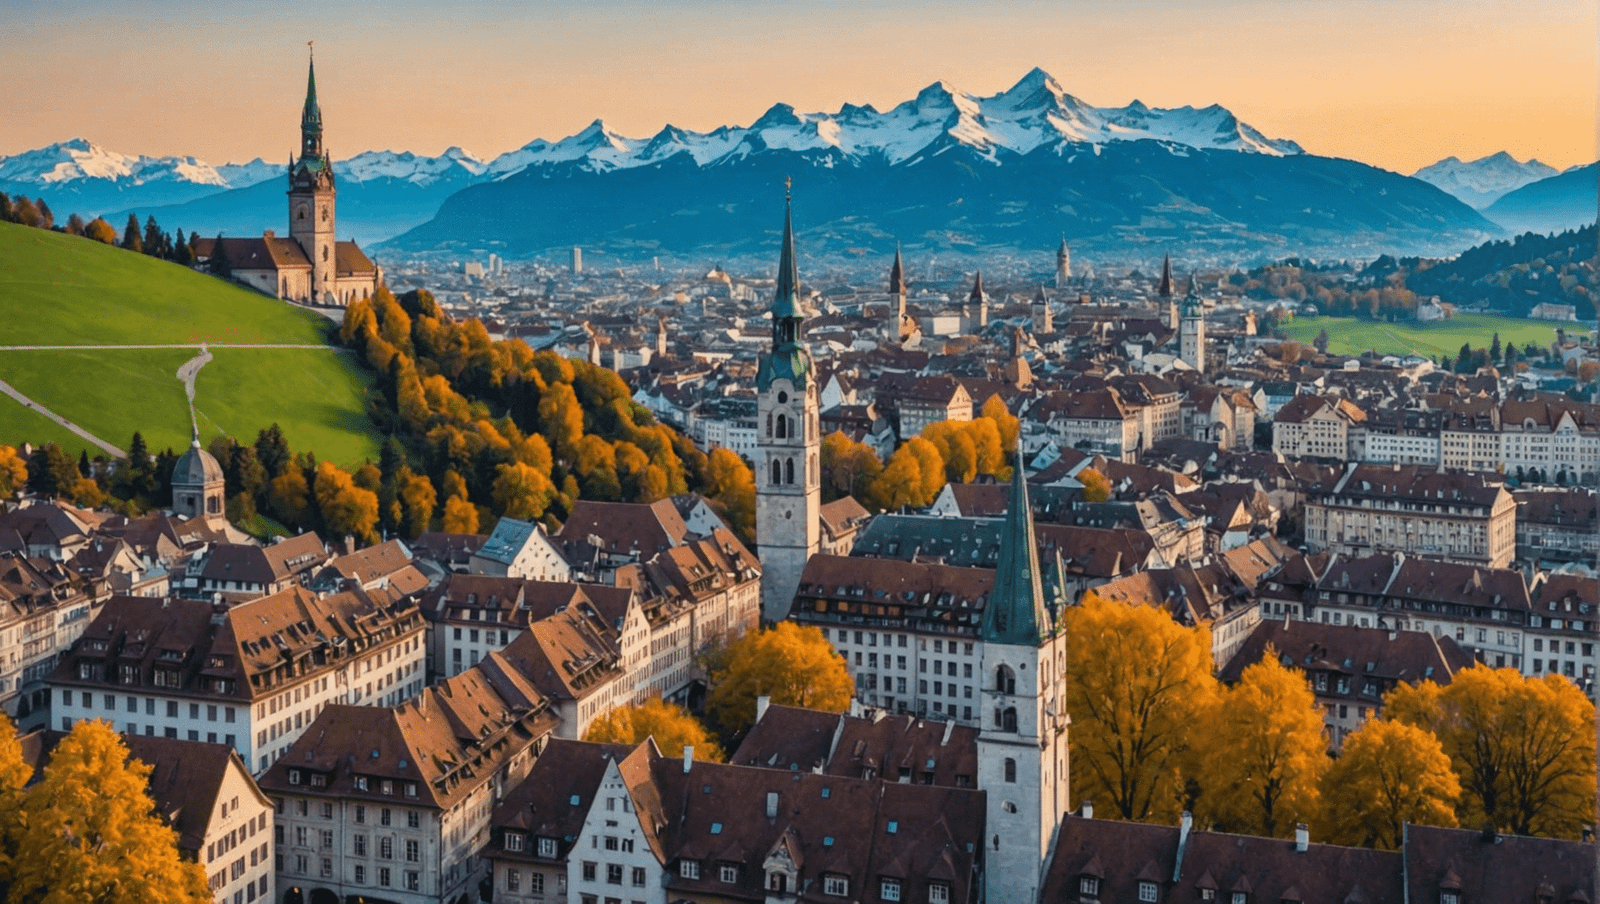 découvrez la capitale de la suisse avec le guide de voyage de berne. informations pratiques, sites touristiques et conseils pour un séjour inoubliable.